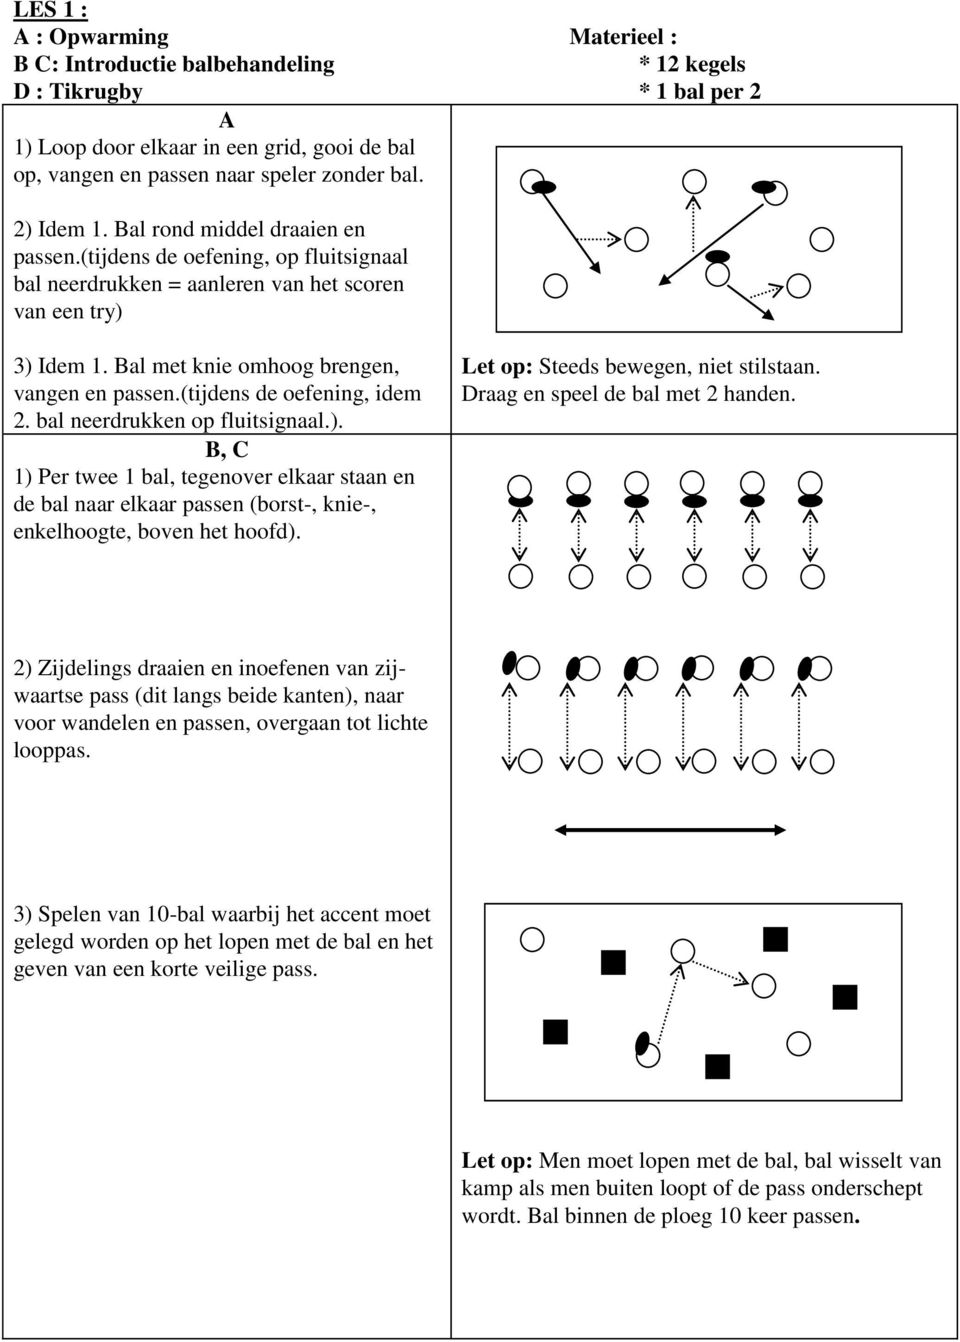 (tijdens de oefening, idem 2. bal neerdrukken op fluitsignaal.). B, C 1) Per twee 1 bal, tegenover elkaar staan en de bal naar elkaar passen (borst-, knie-, enkelhoogte, boven het hoofd).